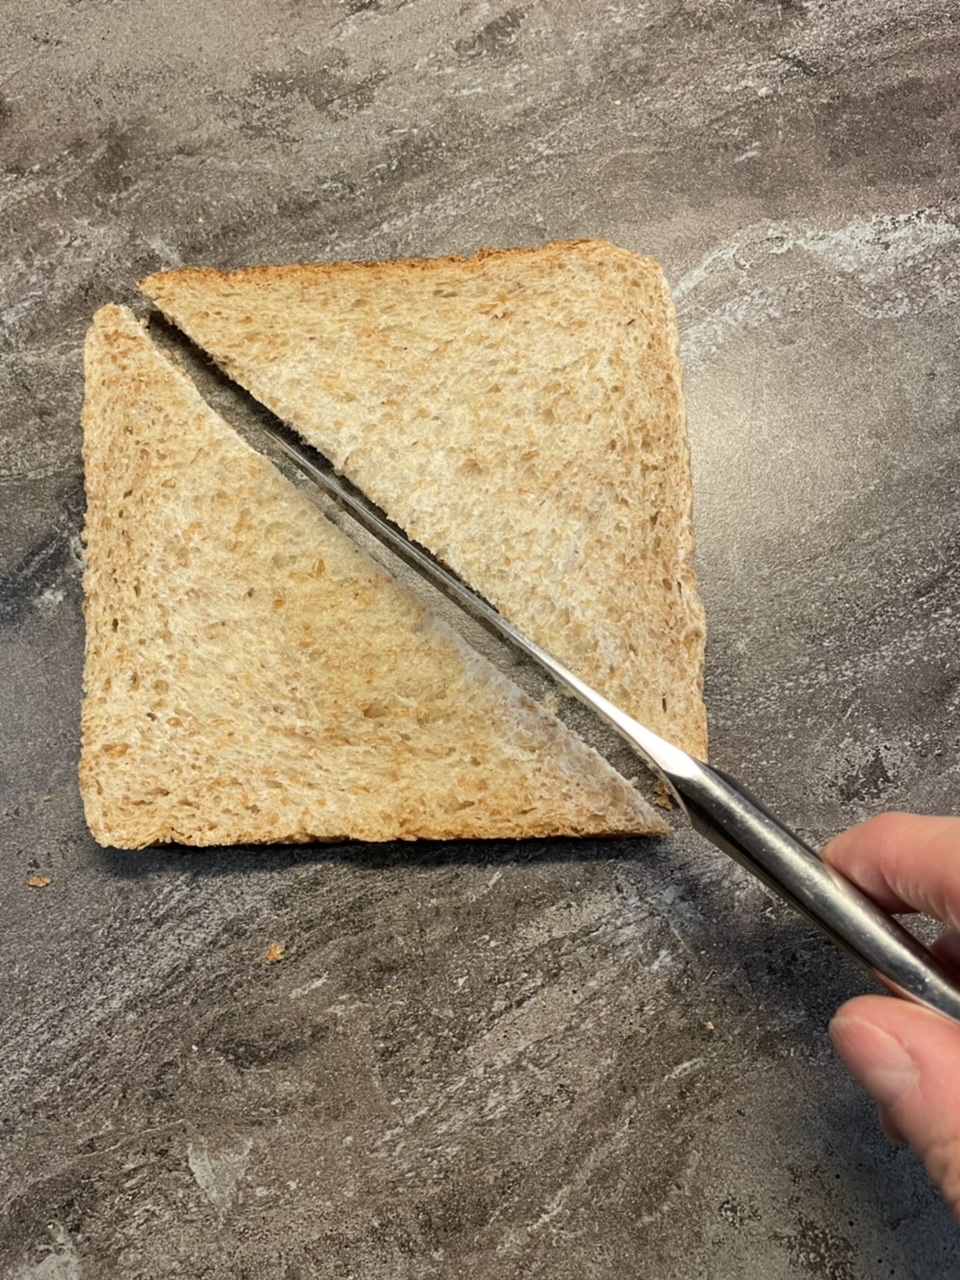 Bild zum Schritt 2 für das Bastel- und DIY-Abenteuer für Kinder: 'Schneidet das Toastbrot zuerst diagonal in der Mitte durch.'